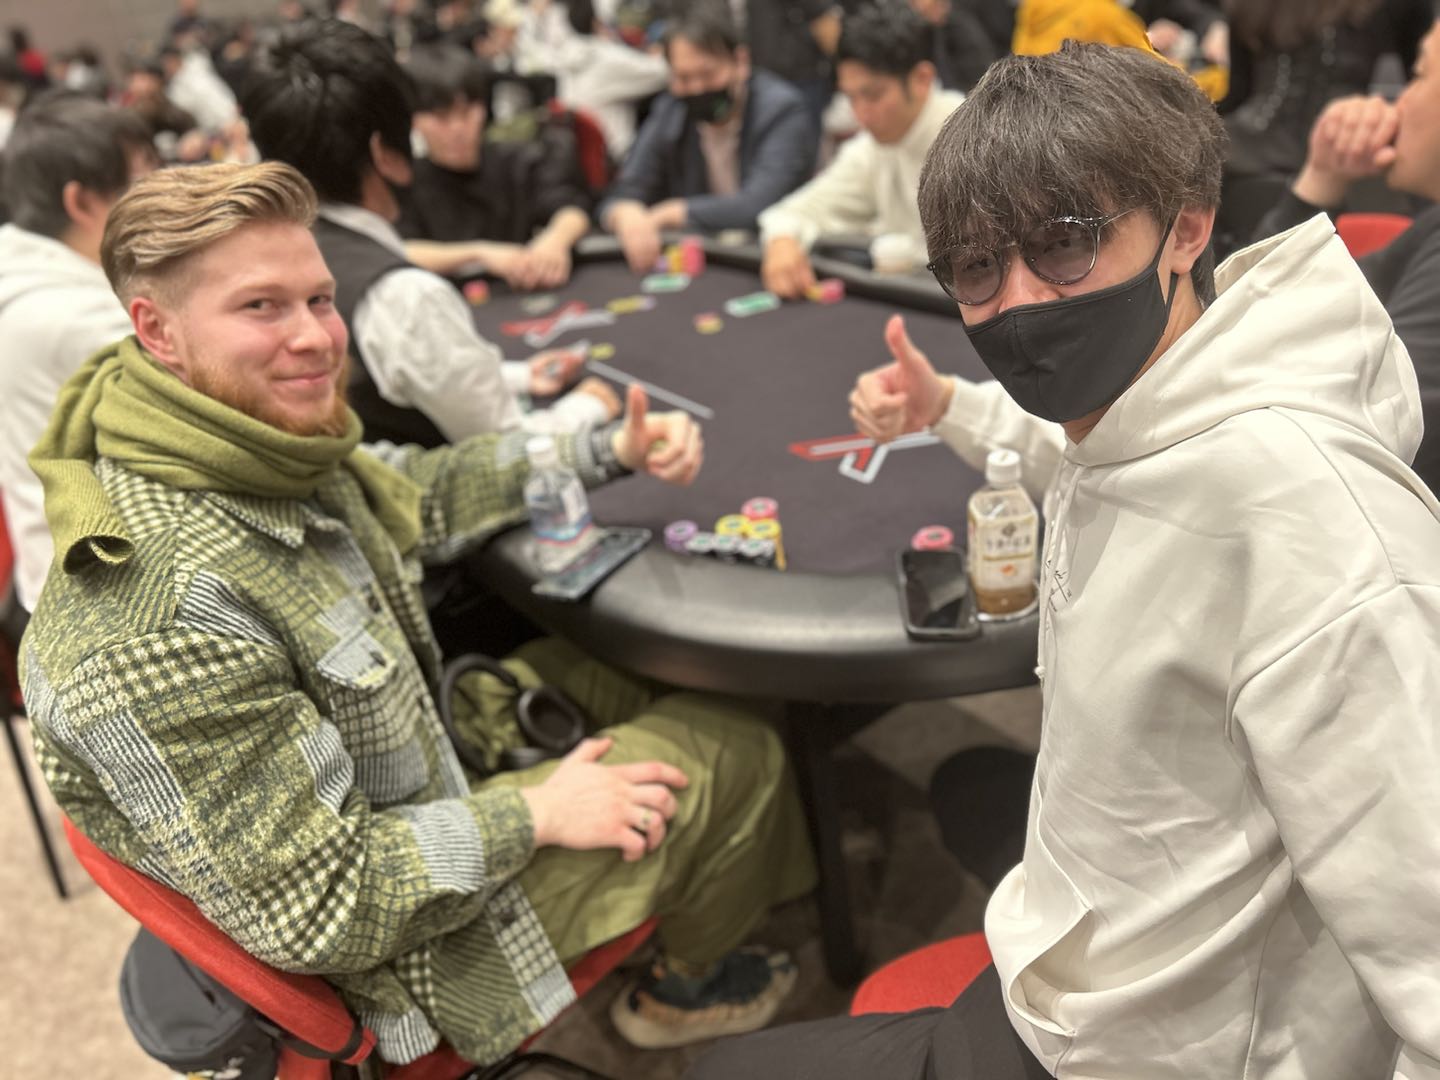 ポーカーテーブルに座っている2人の男性がカメラに向かって微笑んでいる様子